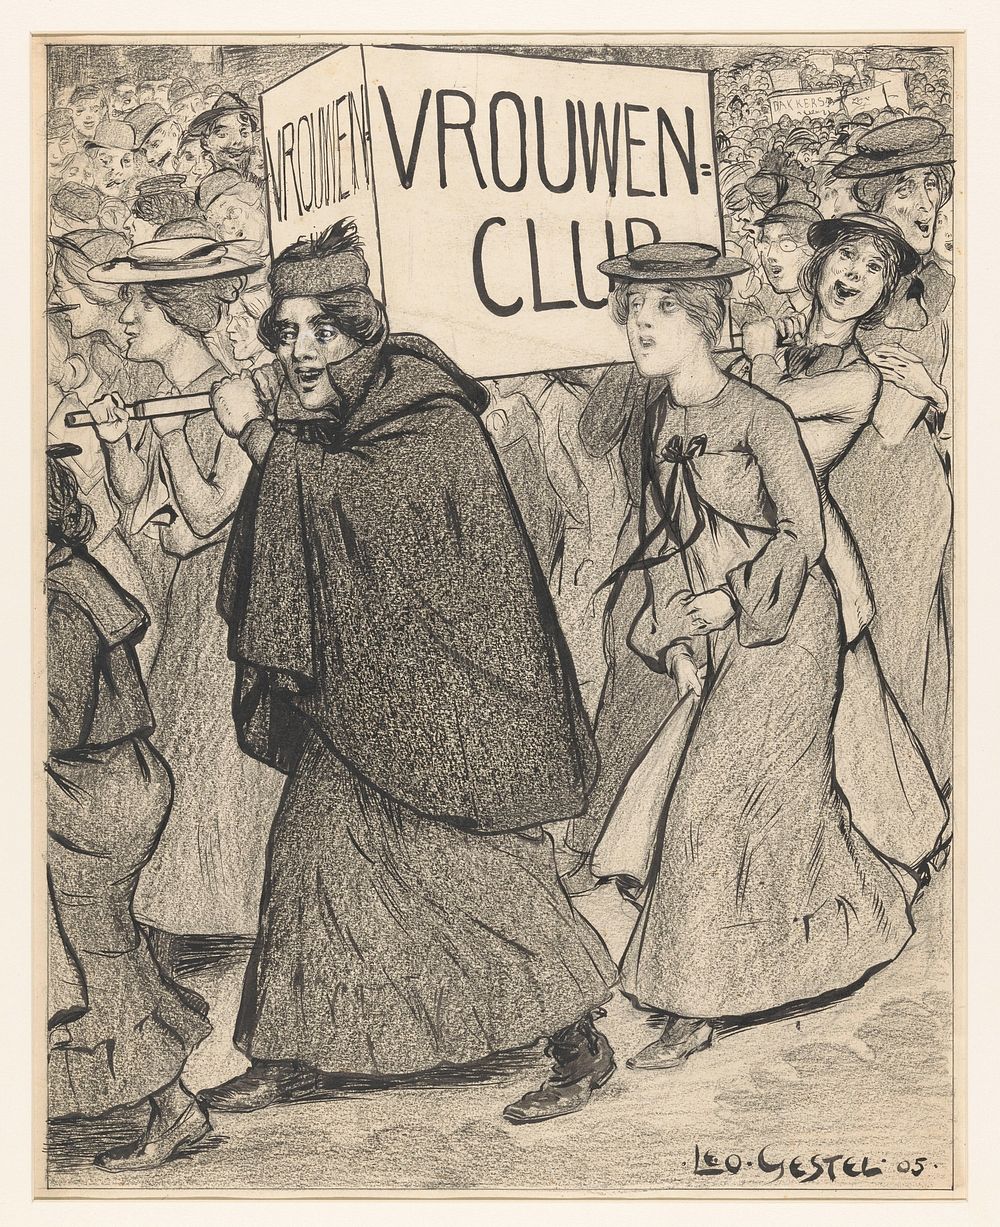 Vrouwen in een optocht van een vrouwenclub (1905) by Leo Gestel